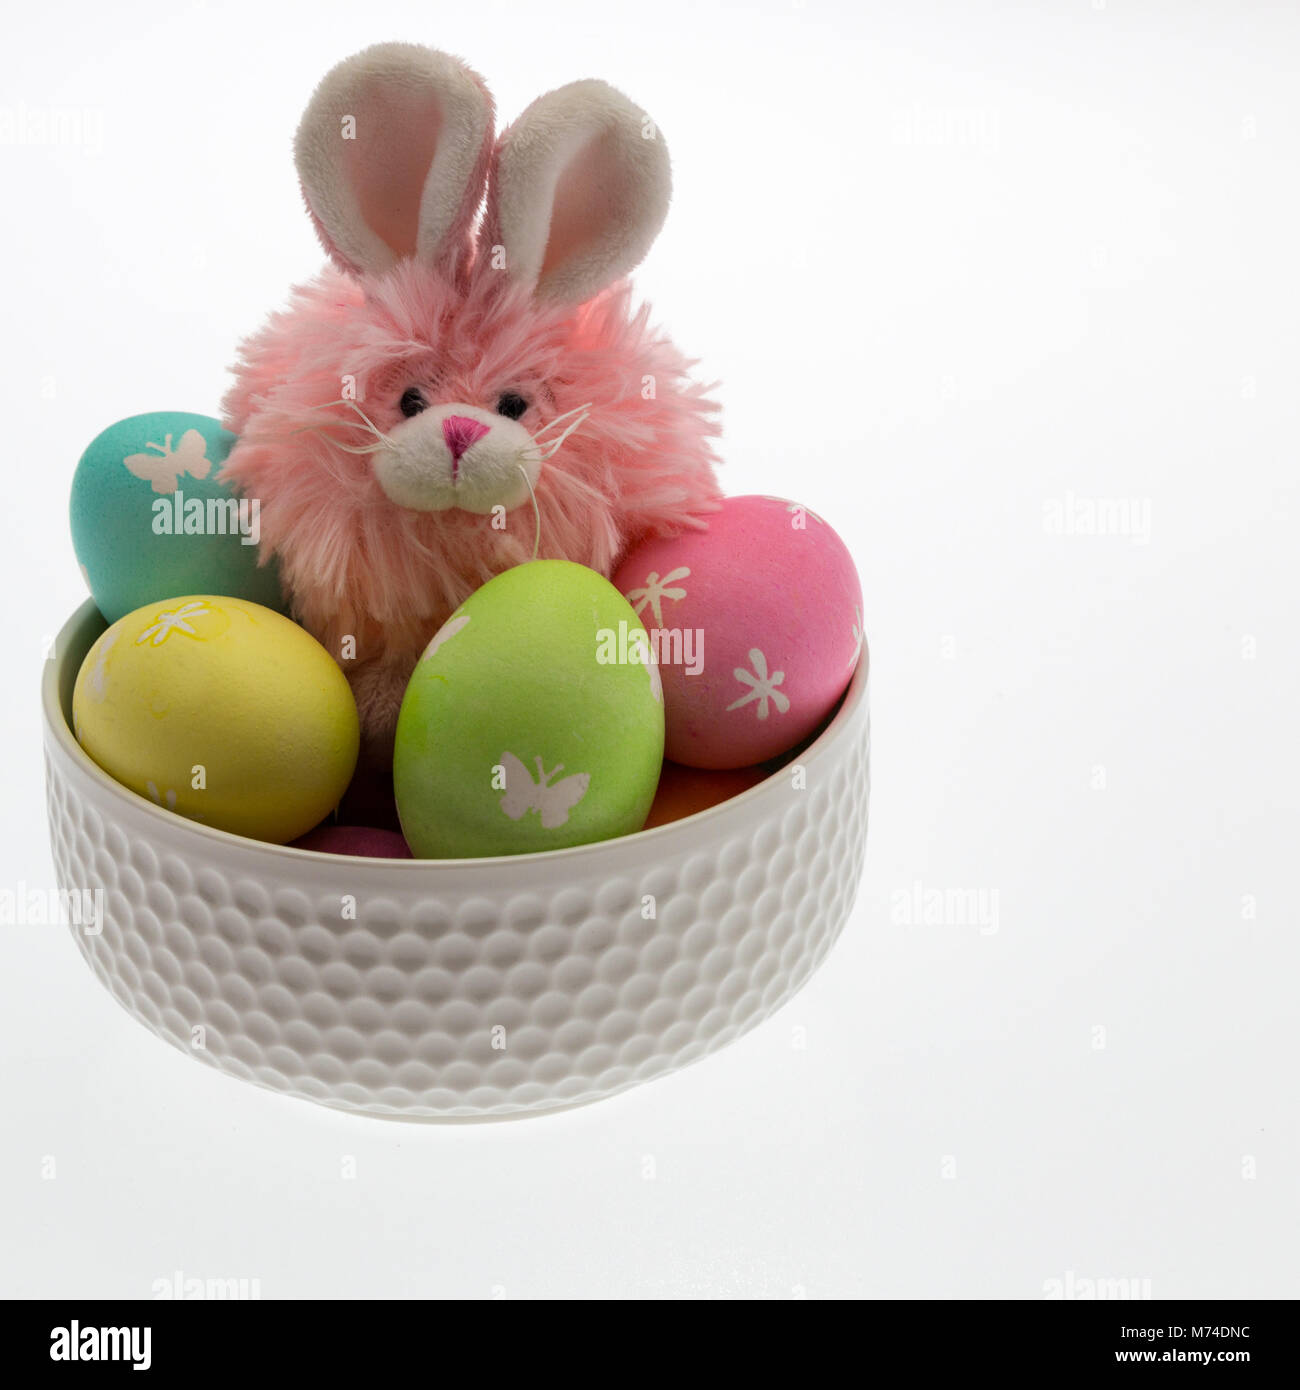 Rosa coniglietto di pasqua, giallo pulcino e numerosi mano uova tinte pastello con carta colorata sminuzzare in una ciotola bianco di convogliare una Pasqua tema per bambini. Foto Stock